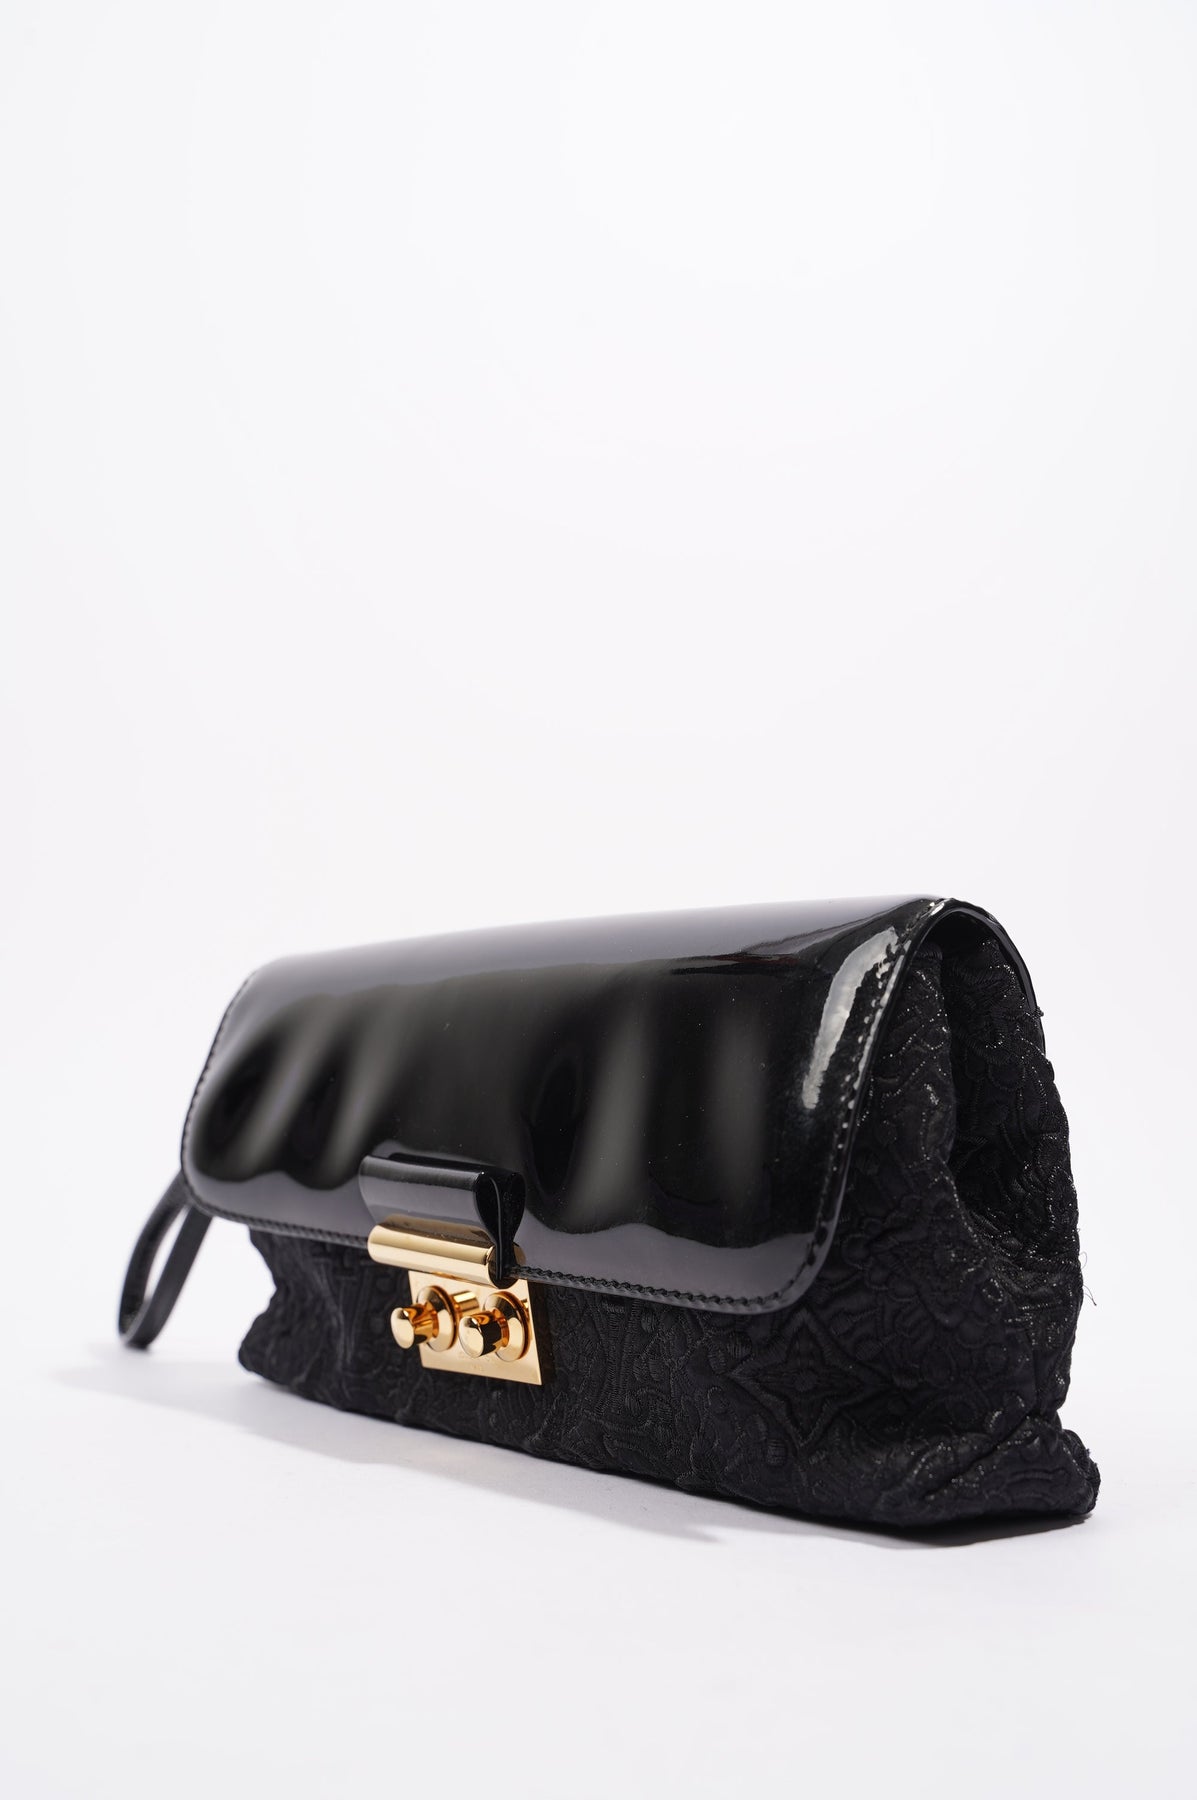 LOUIS VUITTON Slick Black Patent Leather Square Toe Cut Out Buckle Vam –  The Paper Bag Princess Vintage